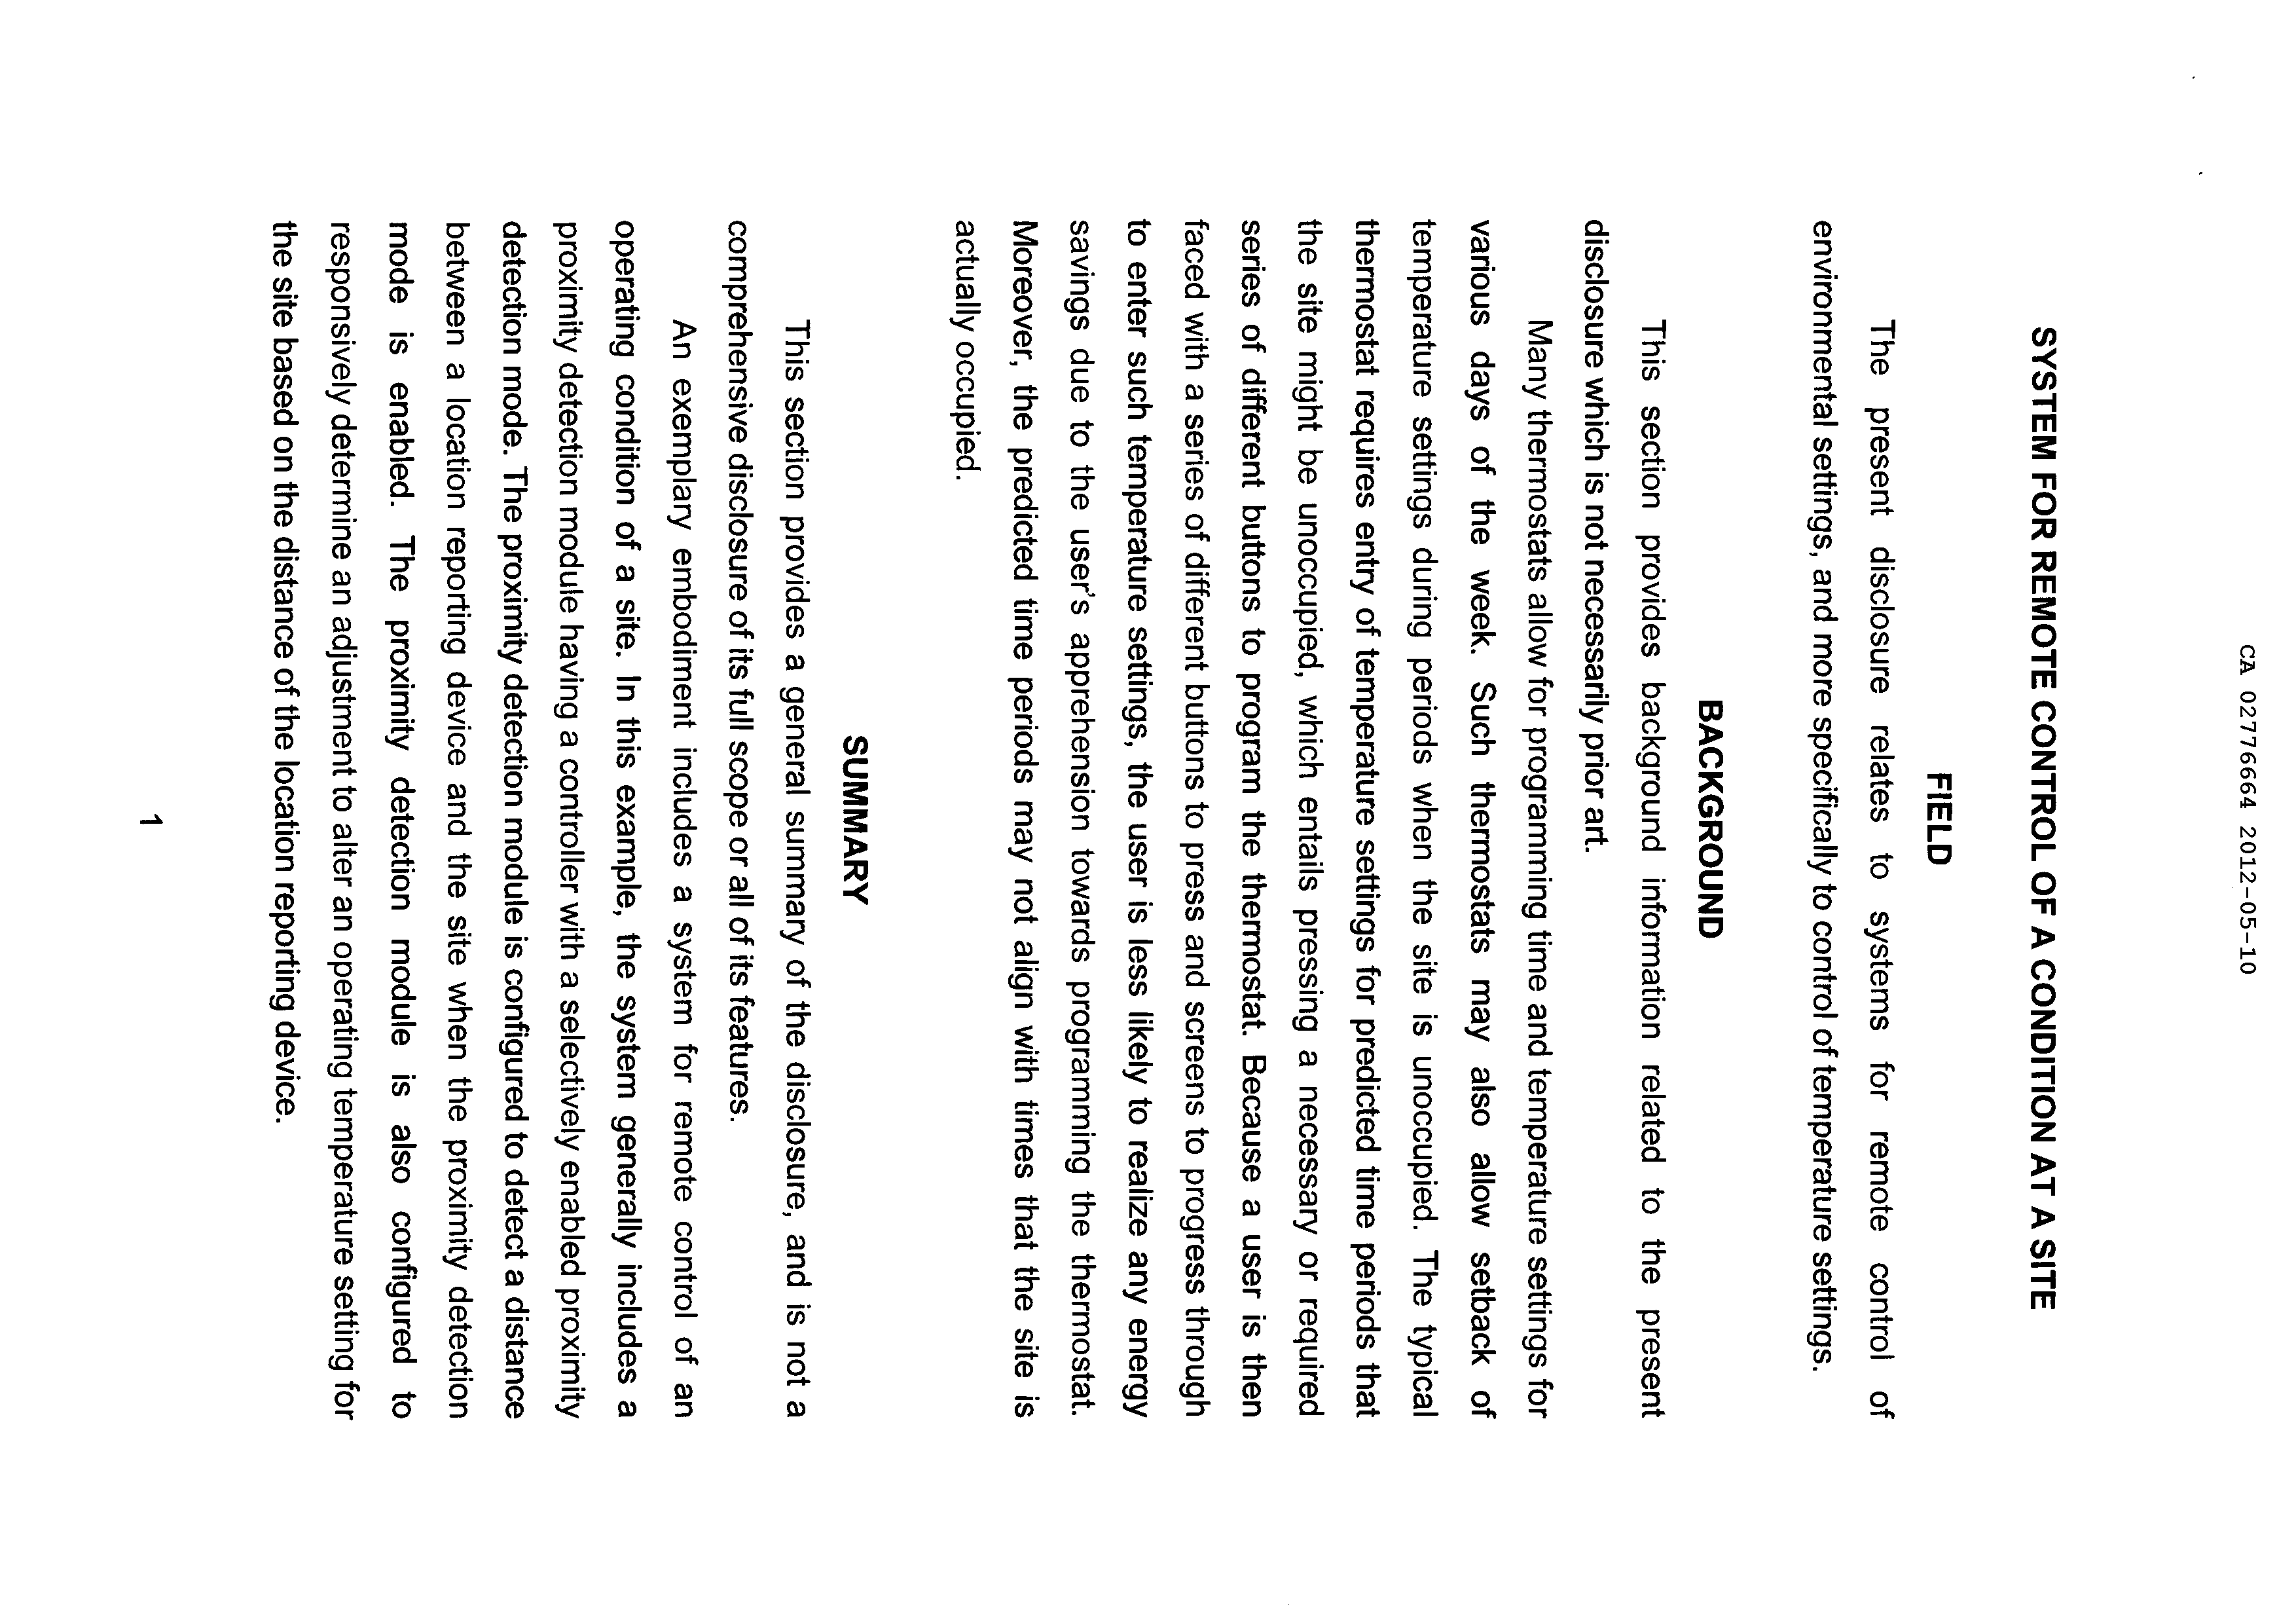 Canadian Patent Document 2776664. Description 20111210. Image 1 of 17